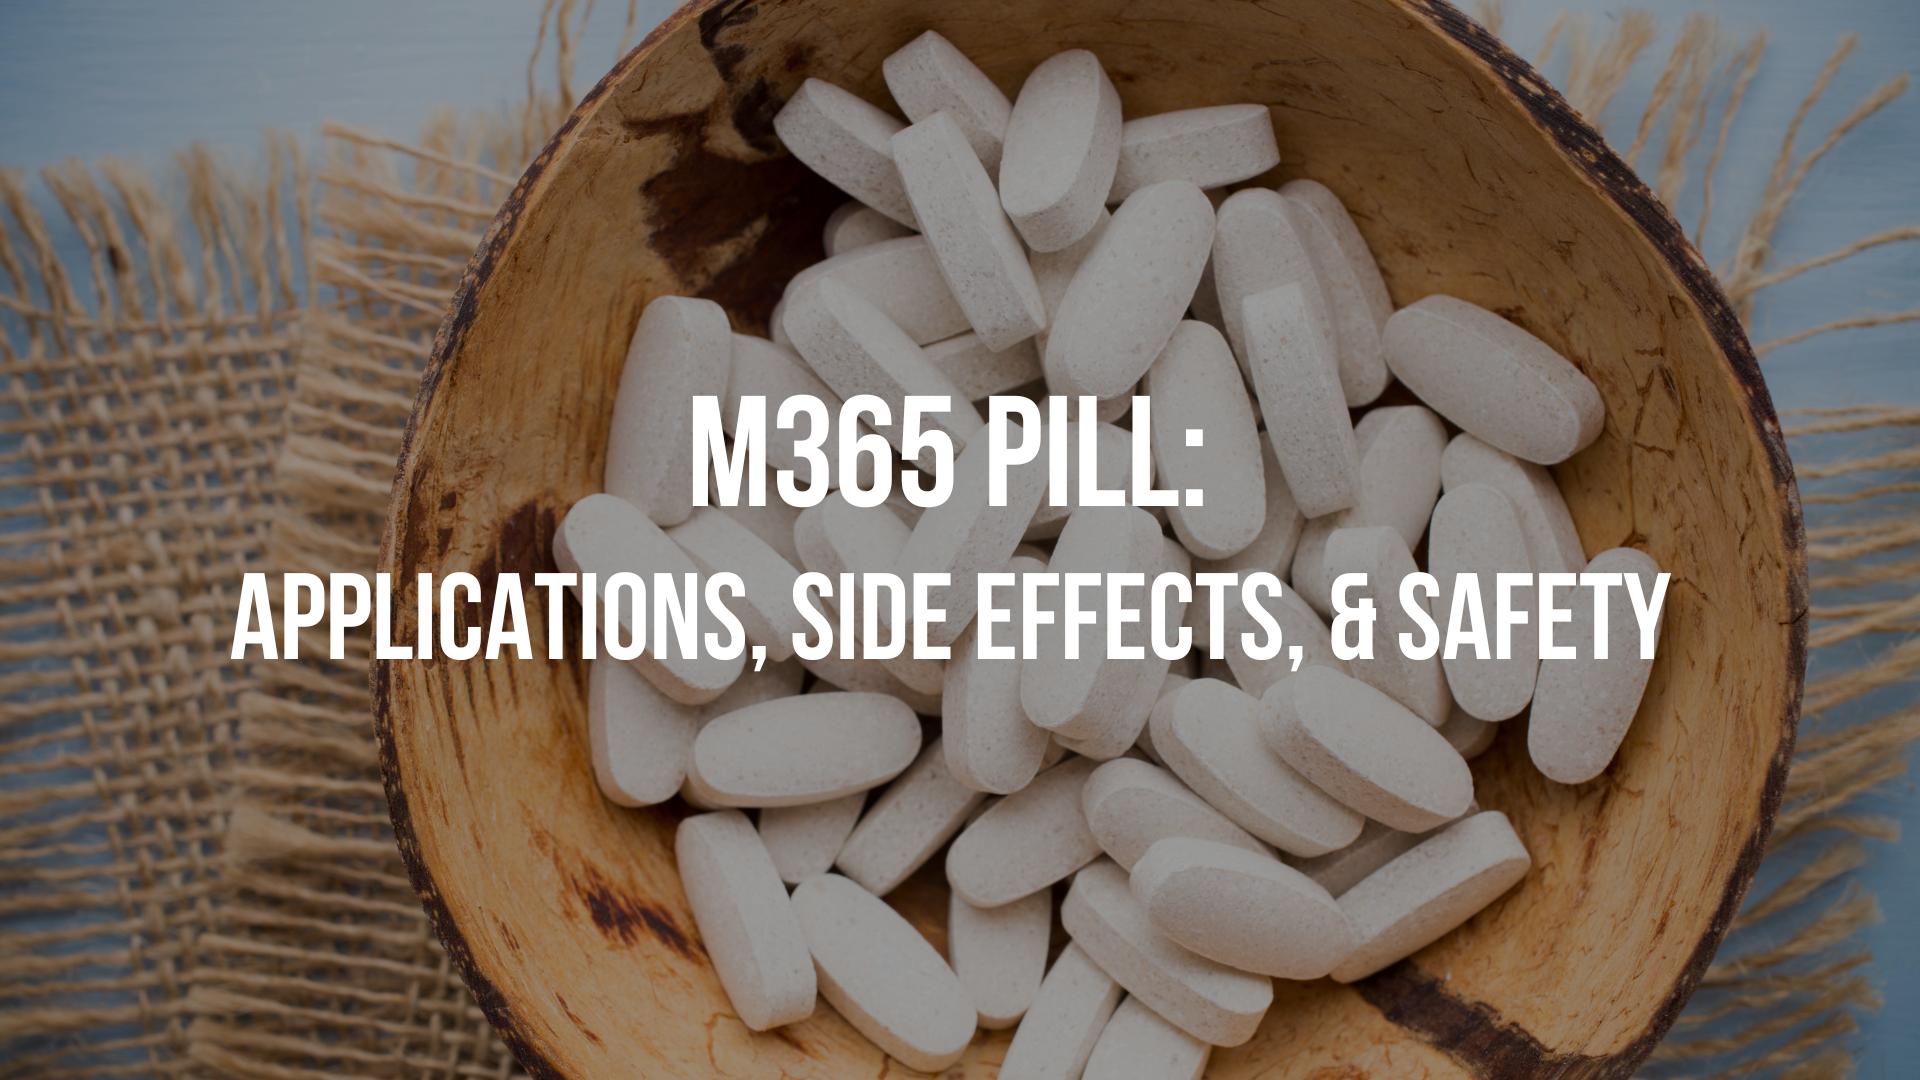 M365 pill